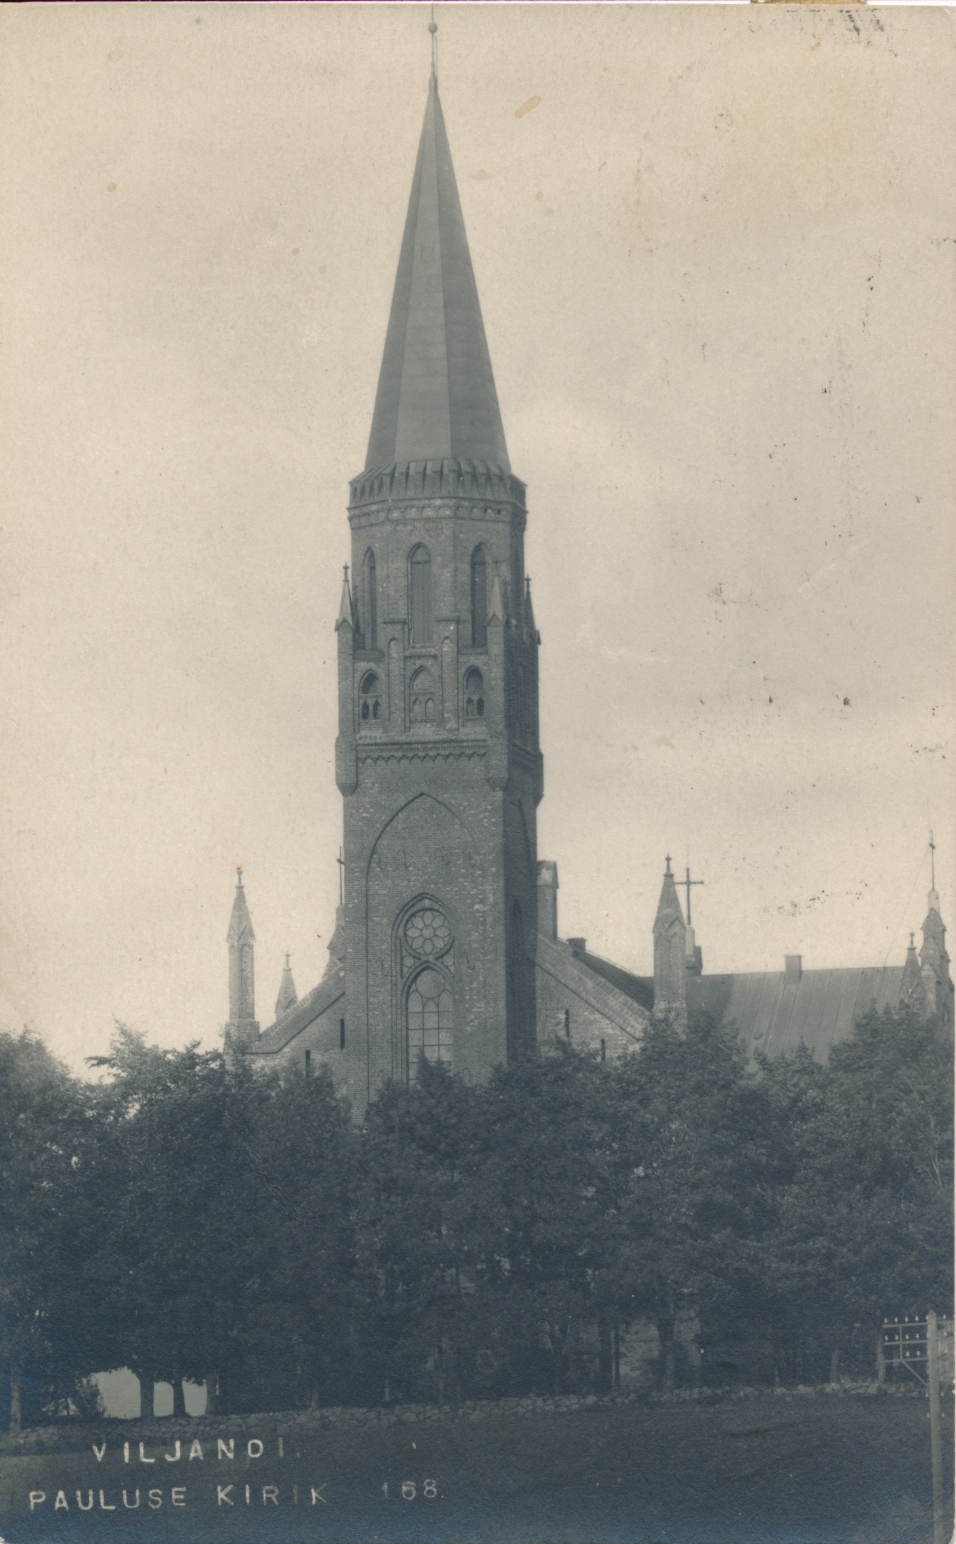 foto, Viljandi, Pauluse kirik, u 1910, fotograaf J. Riet